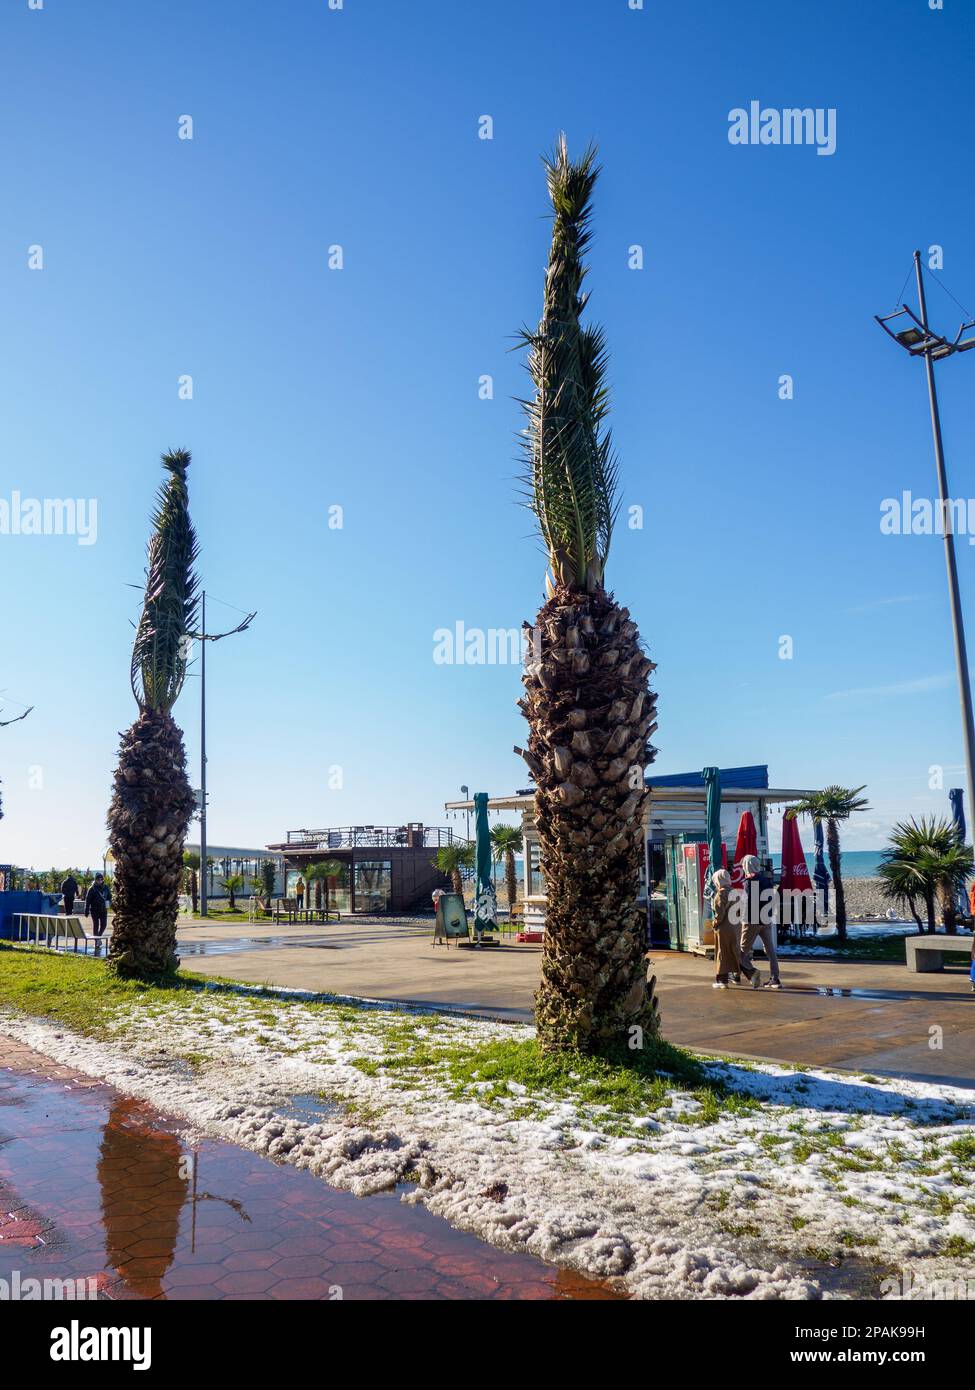 Batumi, Géorgie. 02.14.2023 neige sur un palmier et sur l'herbe verte. Hiver à Batumi. L'hiver dans le parc de la station de la ville du sud. Chute soudaine de neige. Banque D'Images